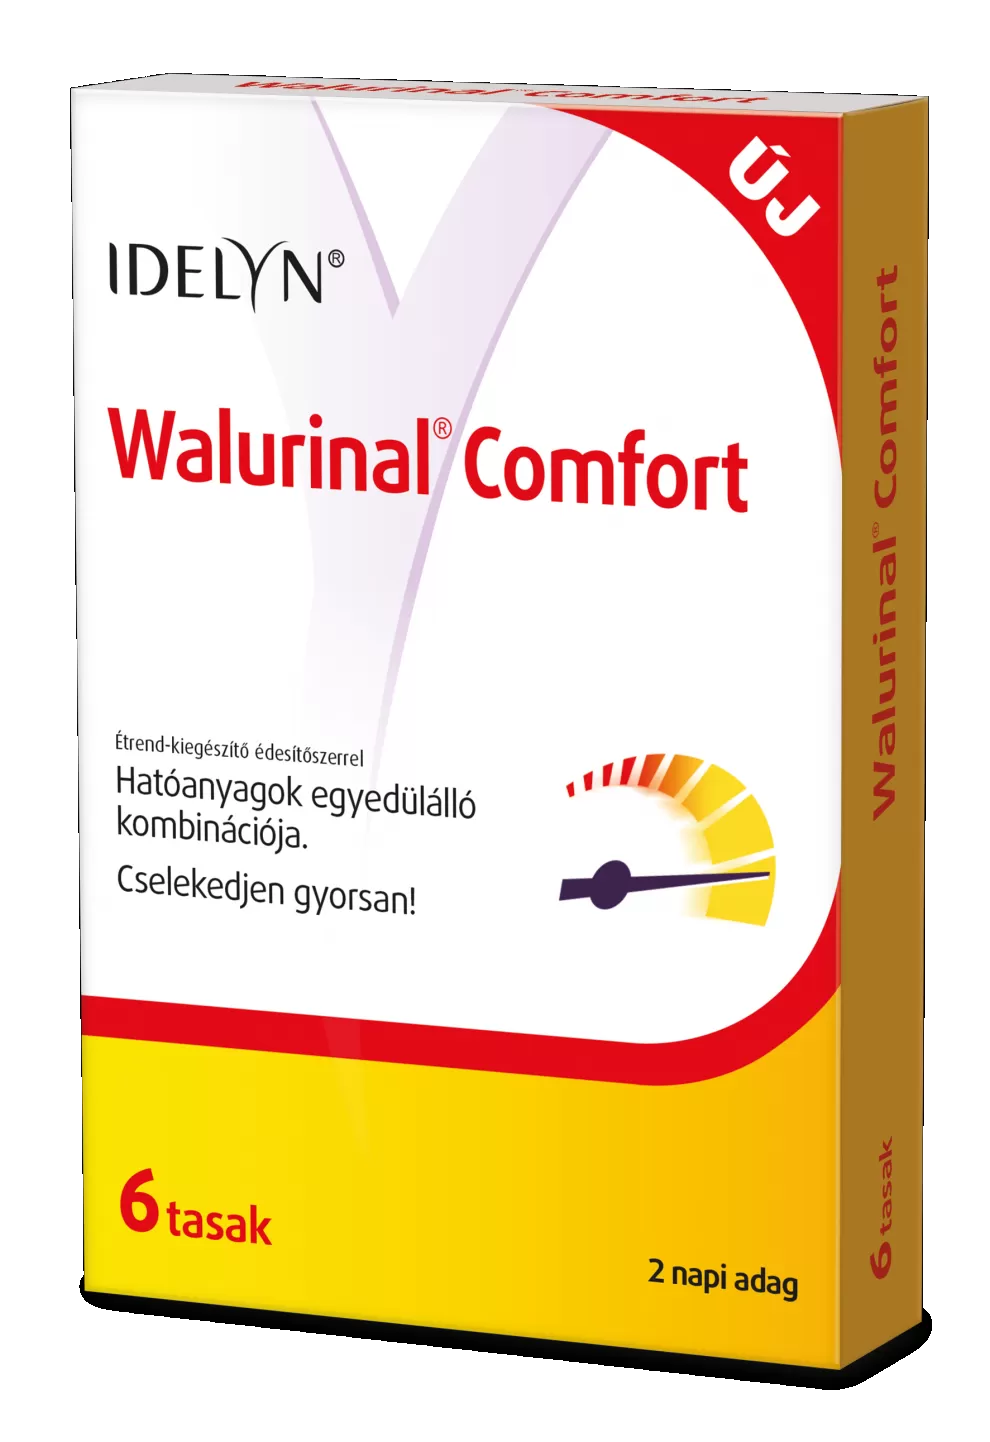 Arany Sas Gyógyszertár - Walmark idelyn walurinal comfort por 6x